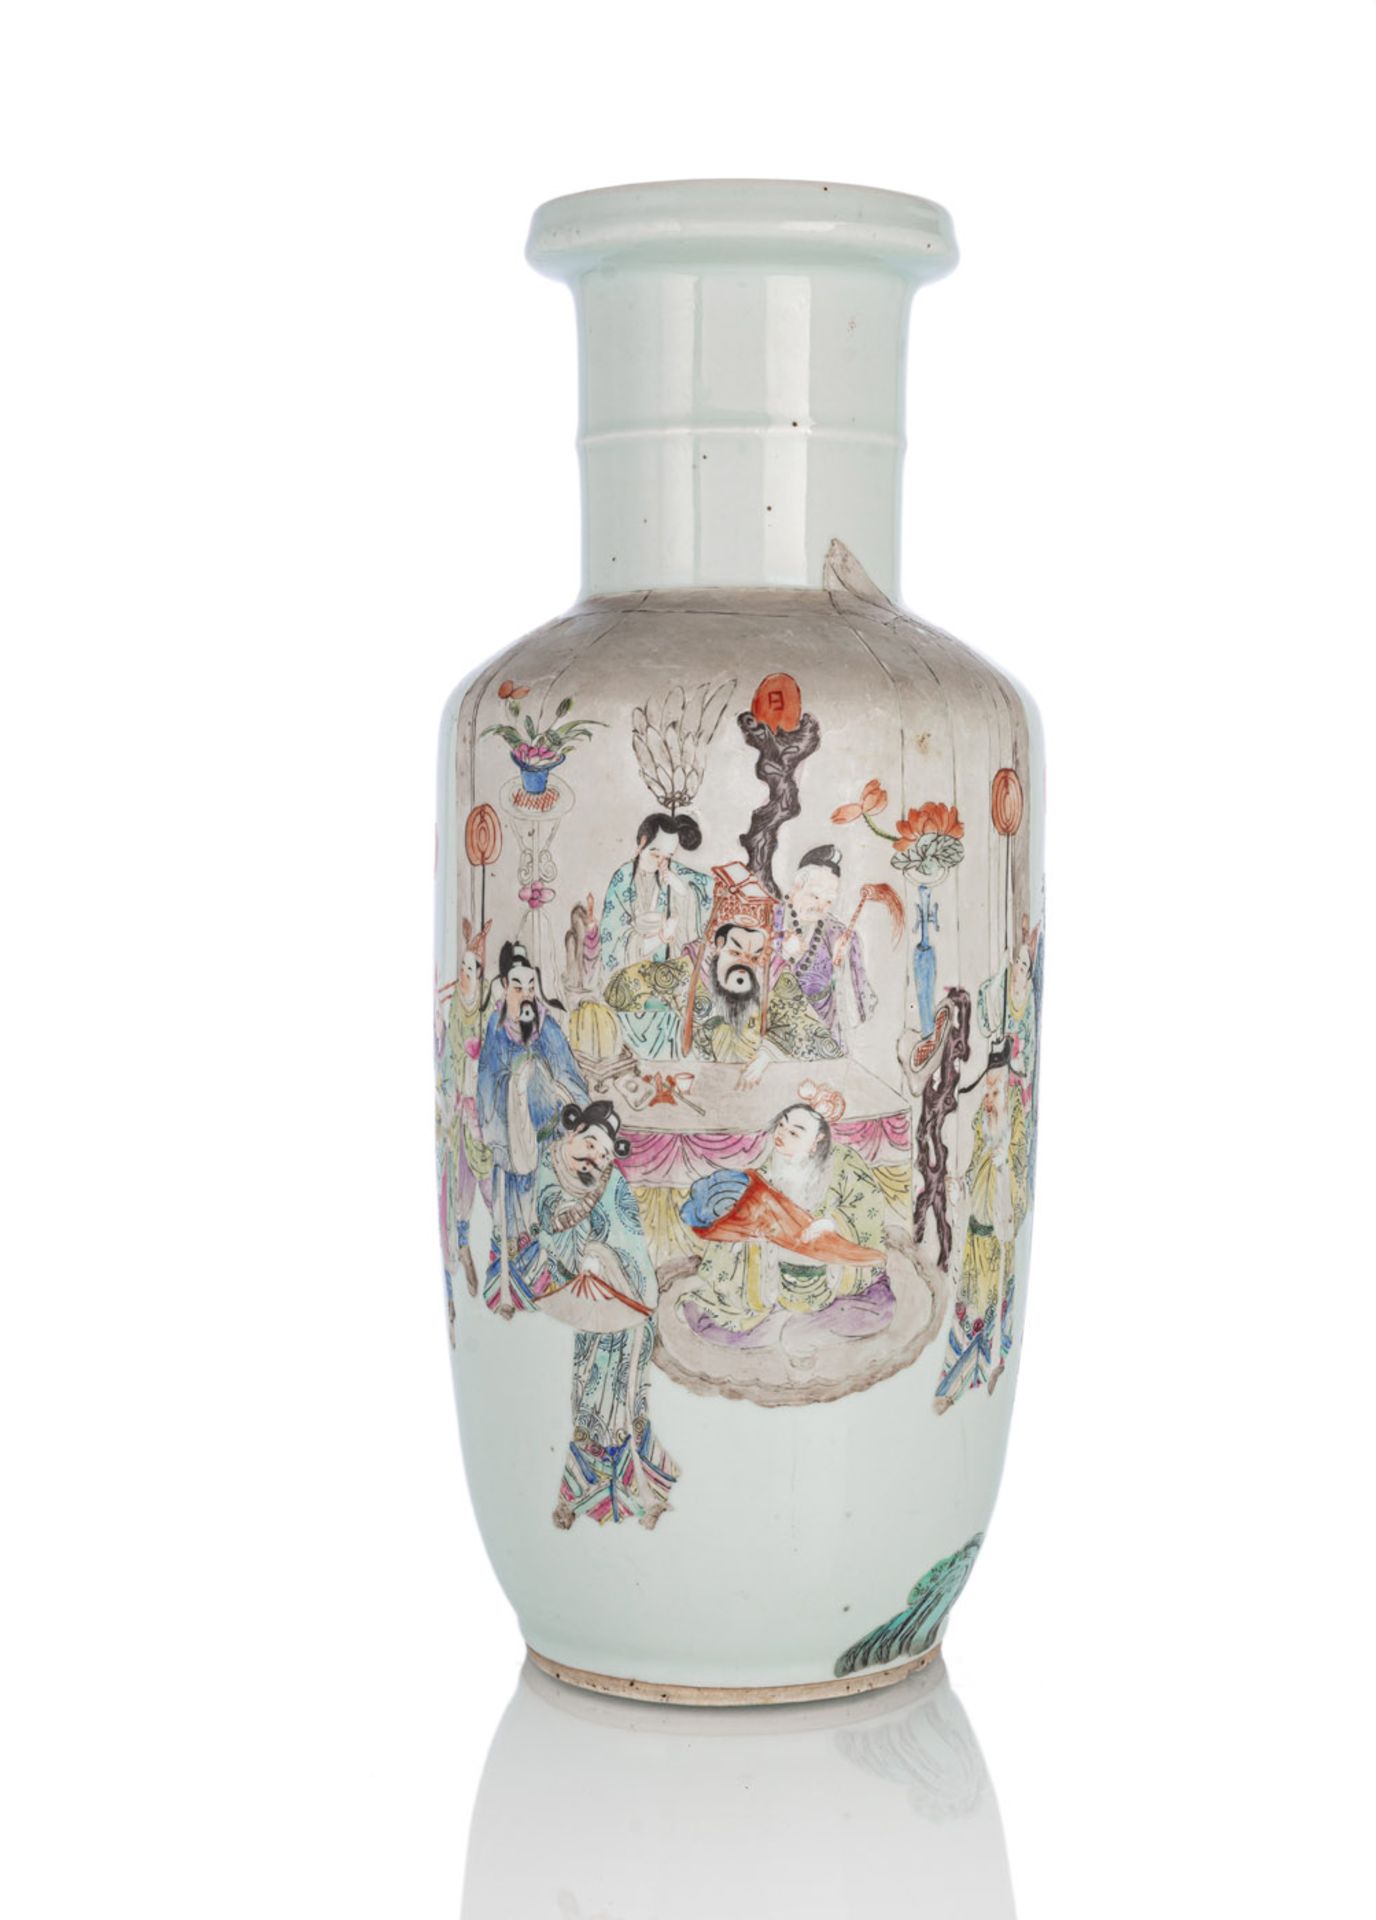 Rouleau-Vase aus Porzellan mit 'Famille rose'-Dekor einer Audienz